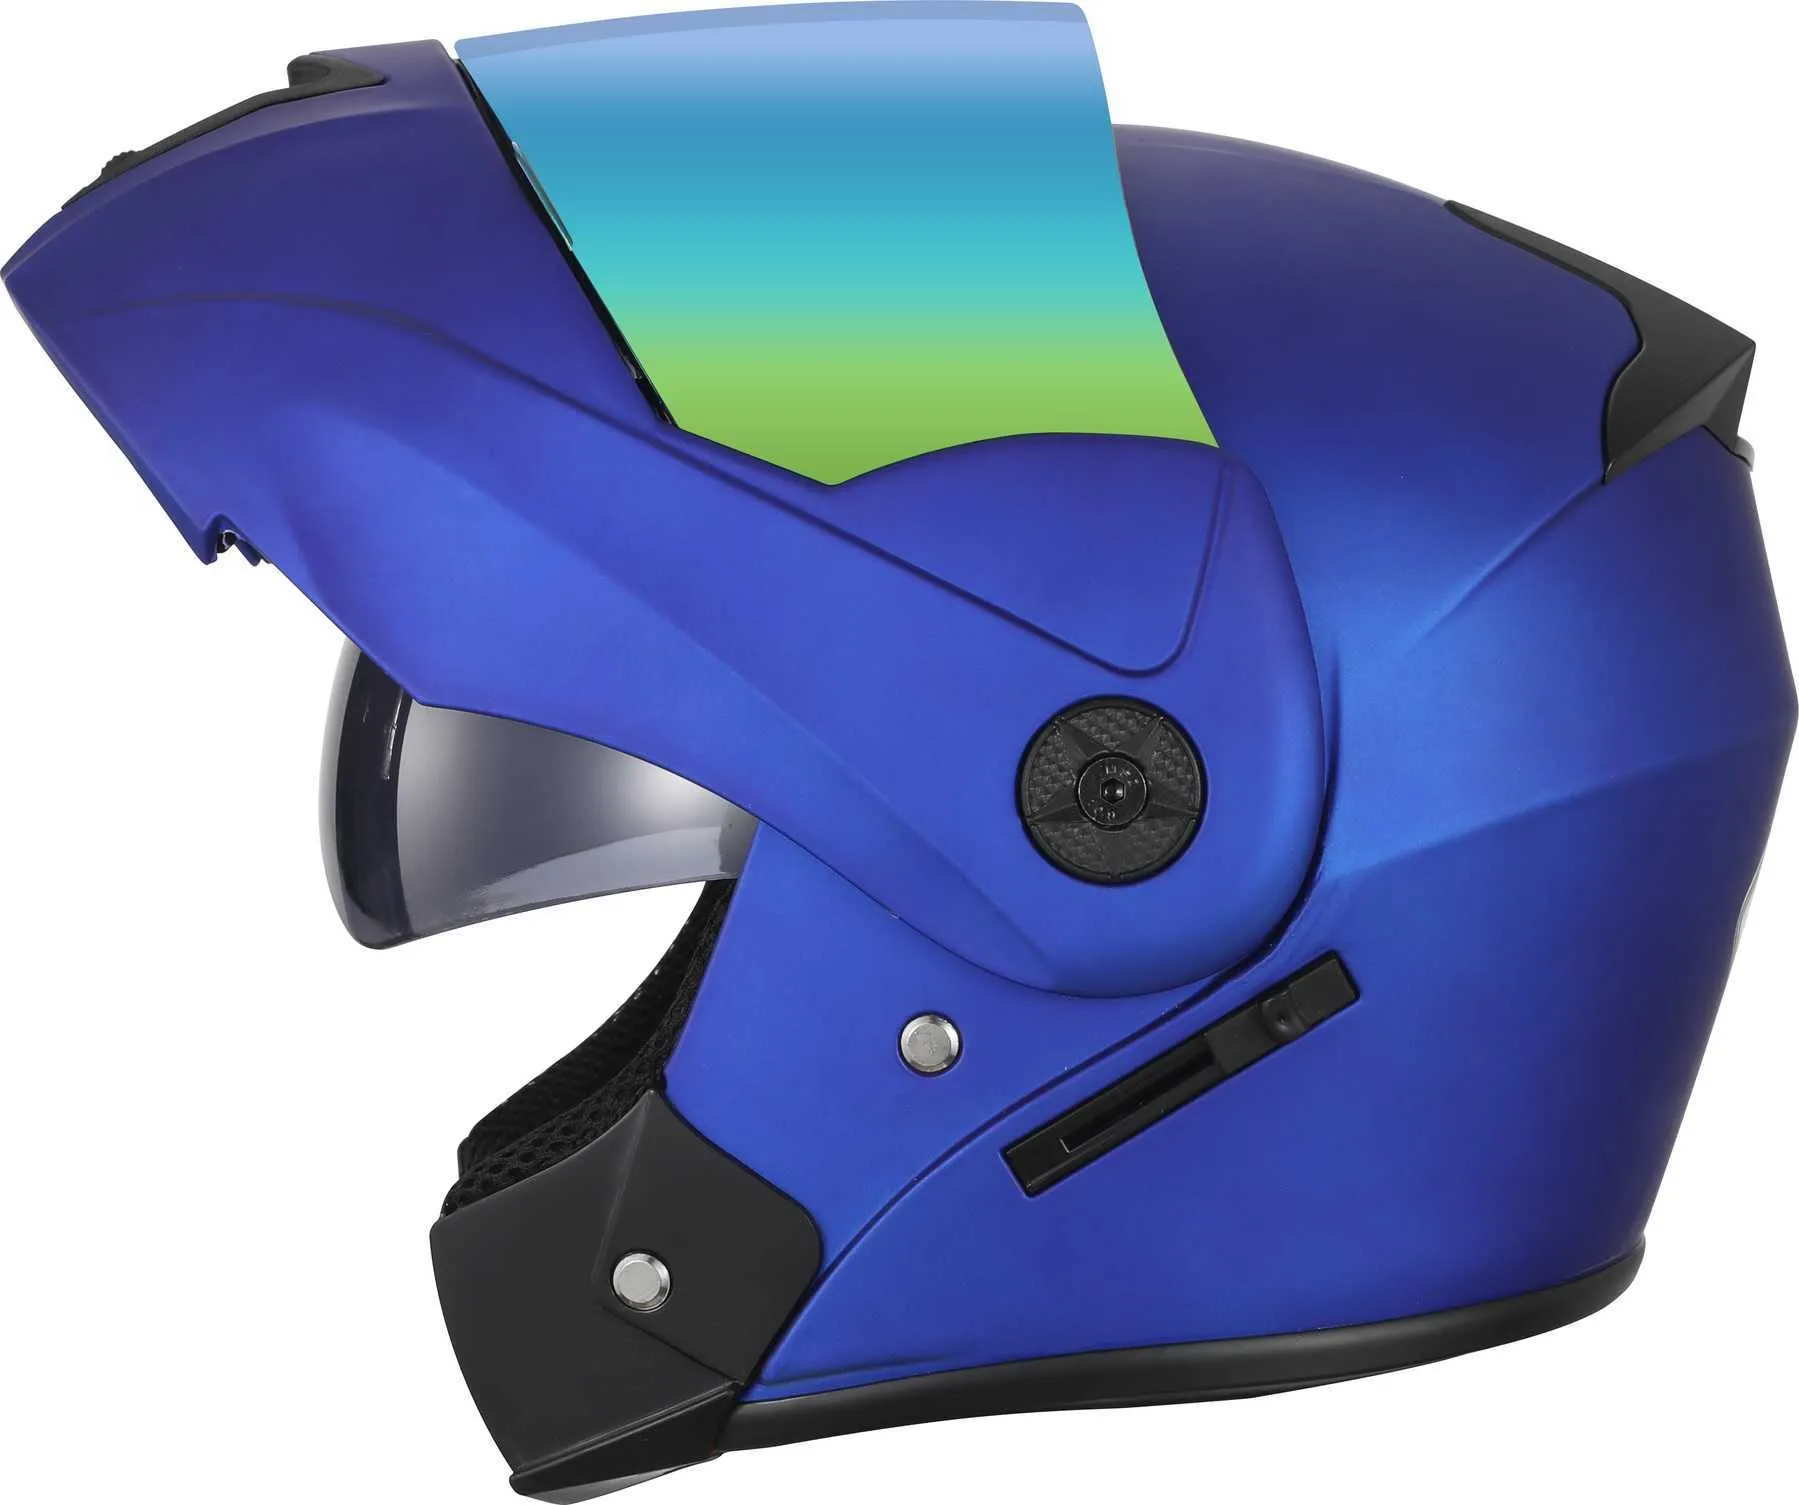 Yetişkinler için yeni flip up motosiklet kaskı modüler çift lens vizörleri tam yüz motosiklet kaskı güvenli motokros kaskları casco moto q063150